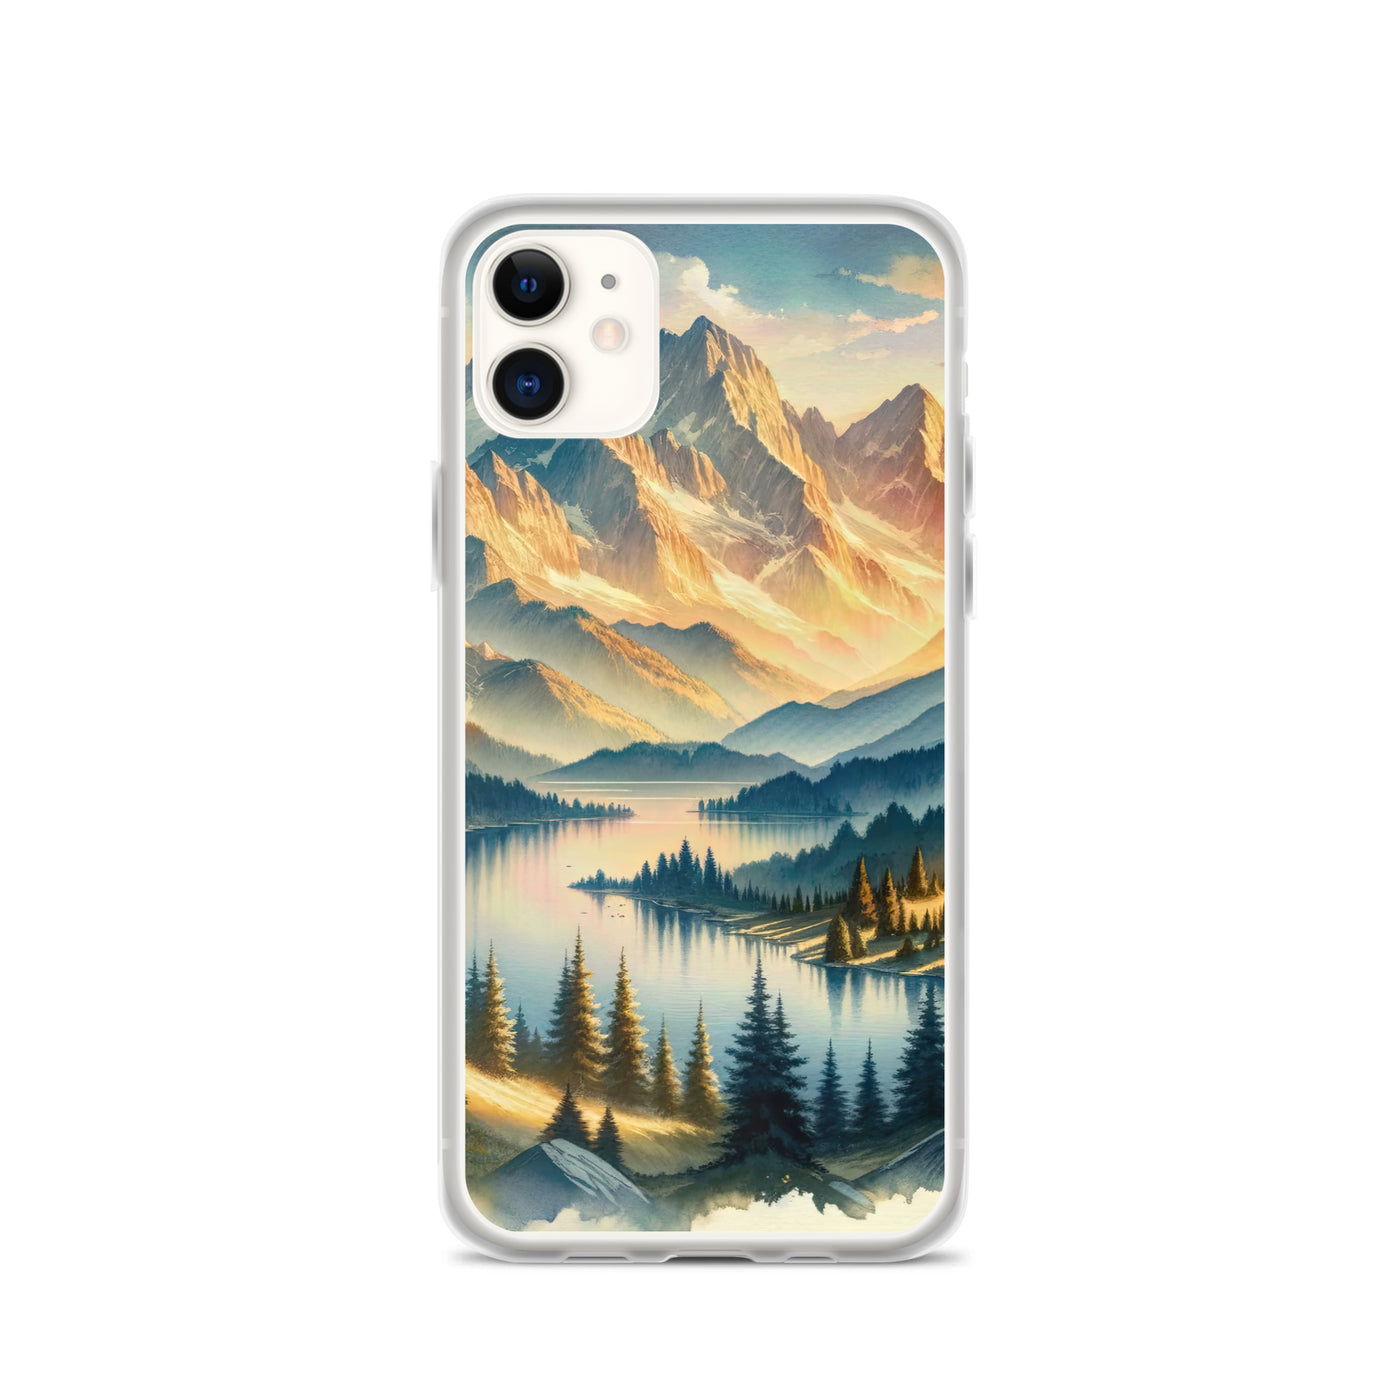 Aquarell der Alpenpracht bei Sonnenuntergang, Berge im goldenen Licht - iPhone Schutzhülle (durchsichtig) berge xxx yyy zzz iPhone 11